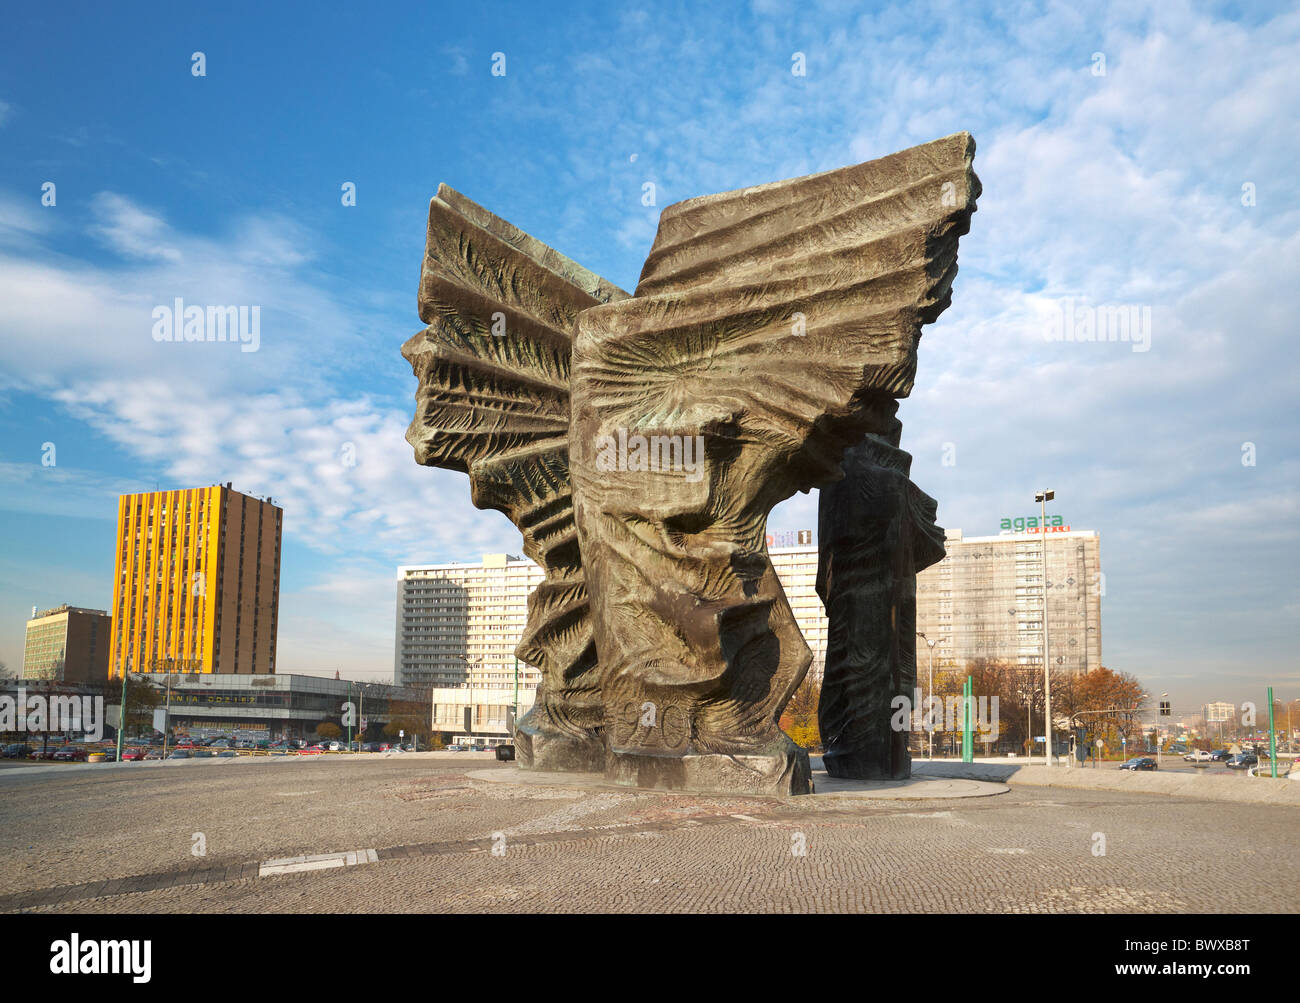 Katowice - Monument to the Silesian Insurgents, Poland Stock Photo